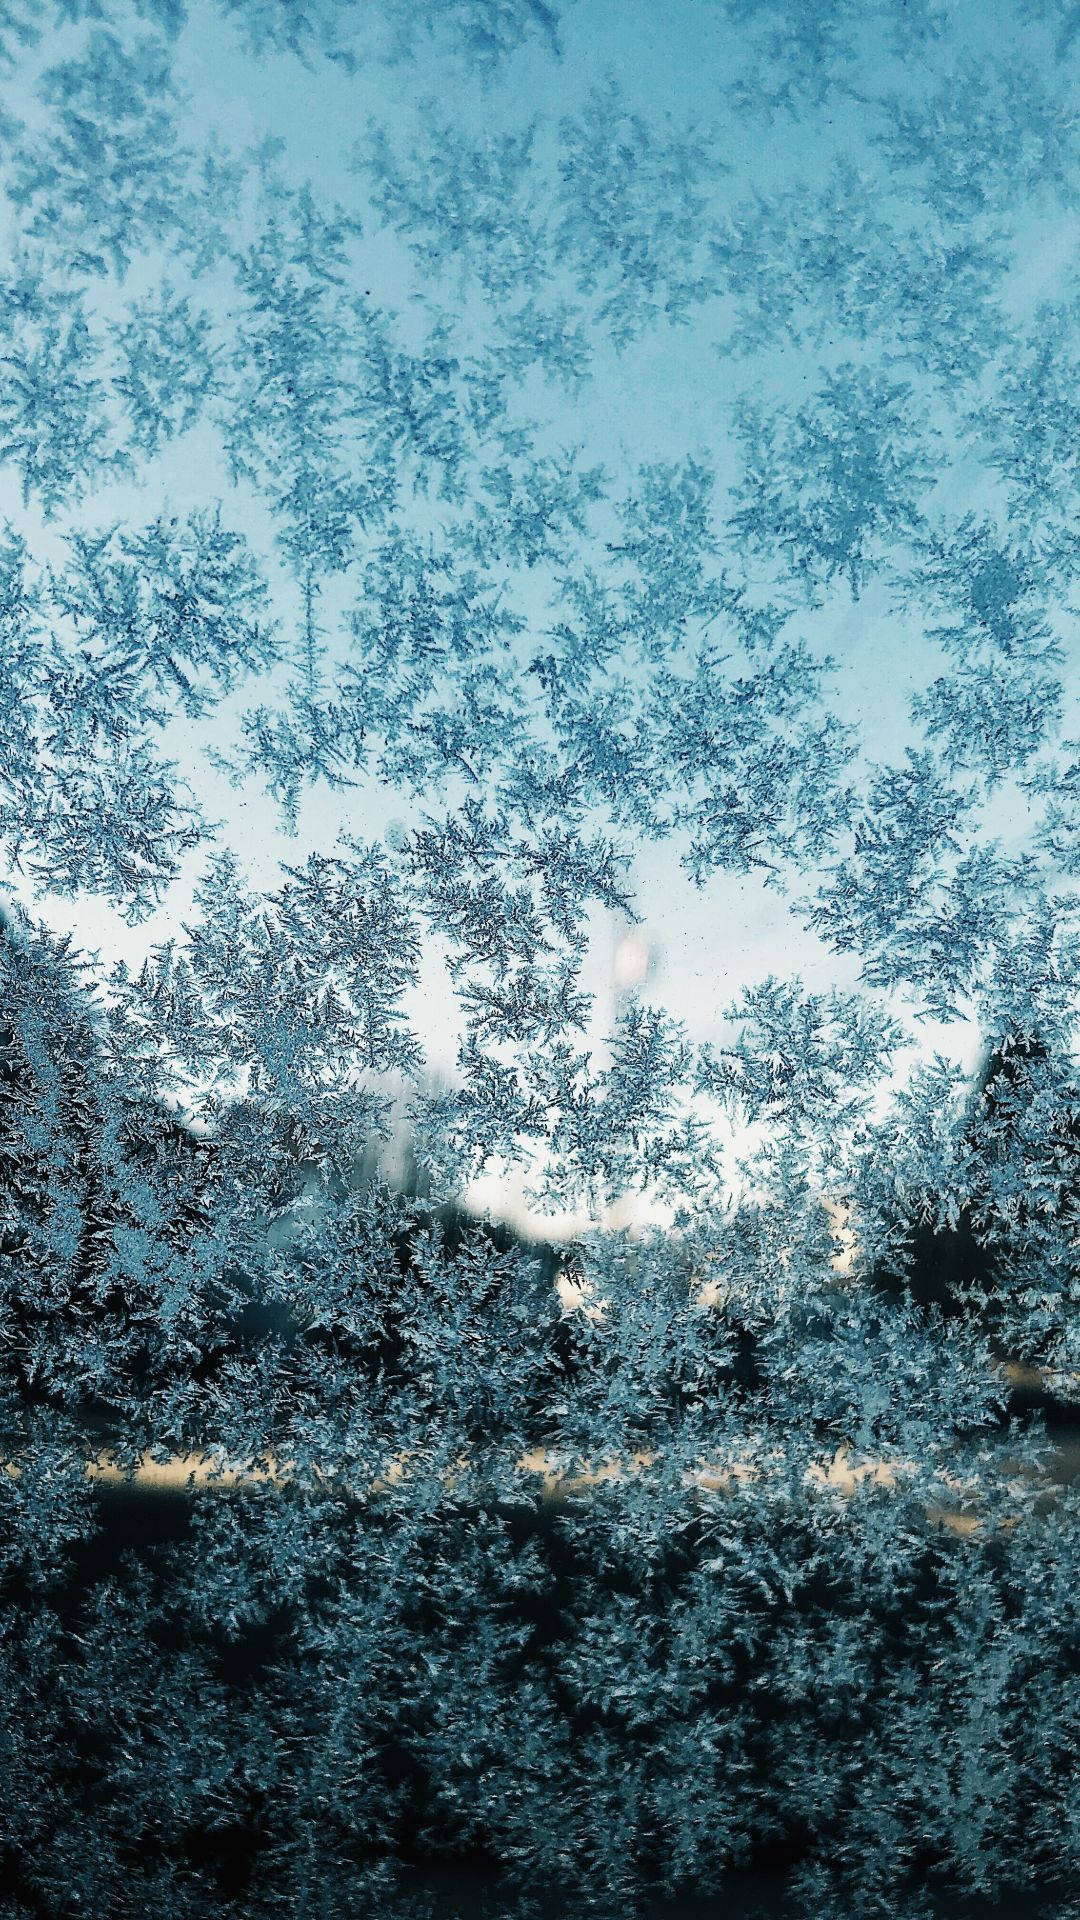 Bestaunedie Filigrane Schönheit Einer Schneeflocke, Die Draußen Vor Deinem Fenster Fällt Und Mit Dem Hochmodernen Snowflake-iphone Eingefangen Wurde. Wallpaper